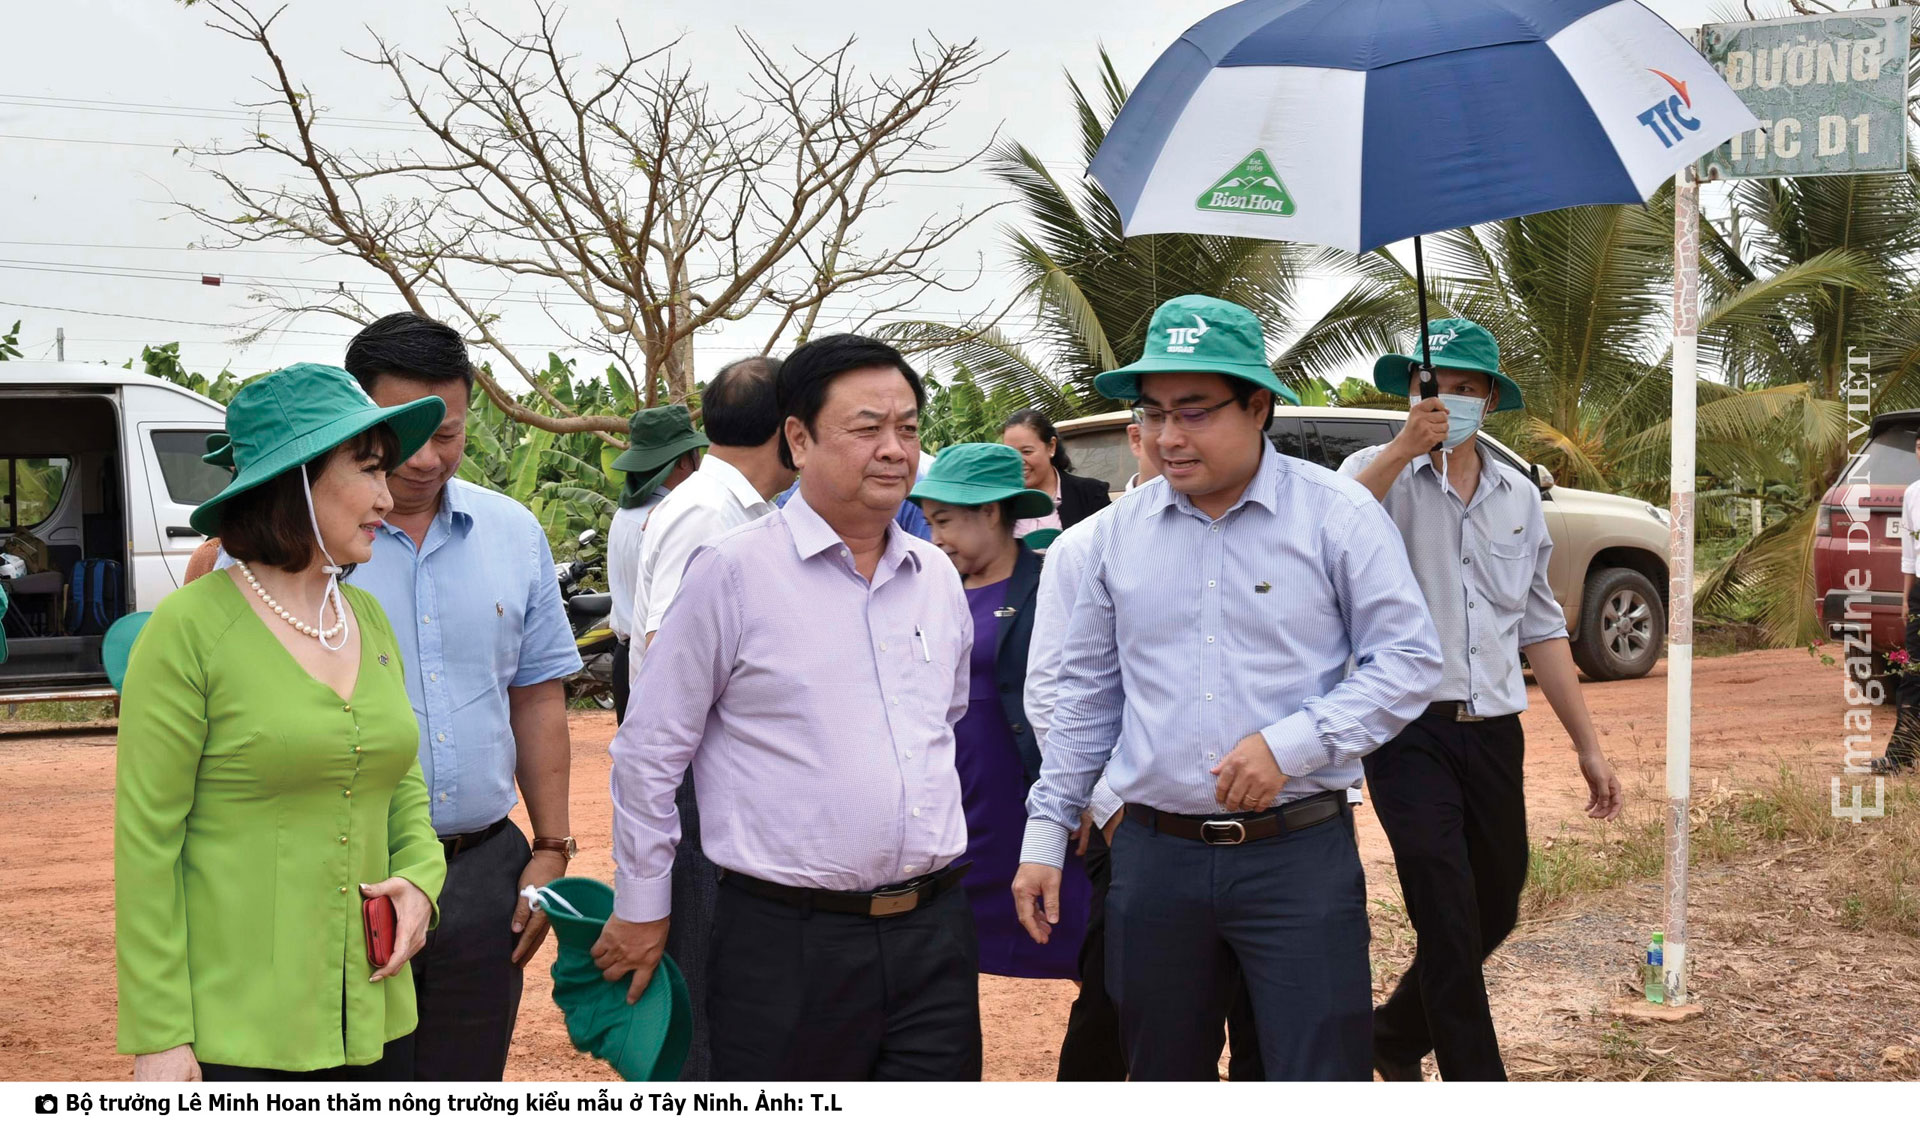 Bộ trưởng Bộ NNPTNT Lê Minh Hoan: Tư duy kinh tế nông nghiệp là phải bán sự khác biệt - Ảnh 9.